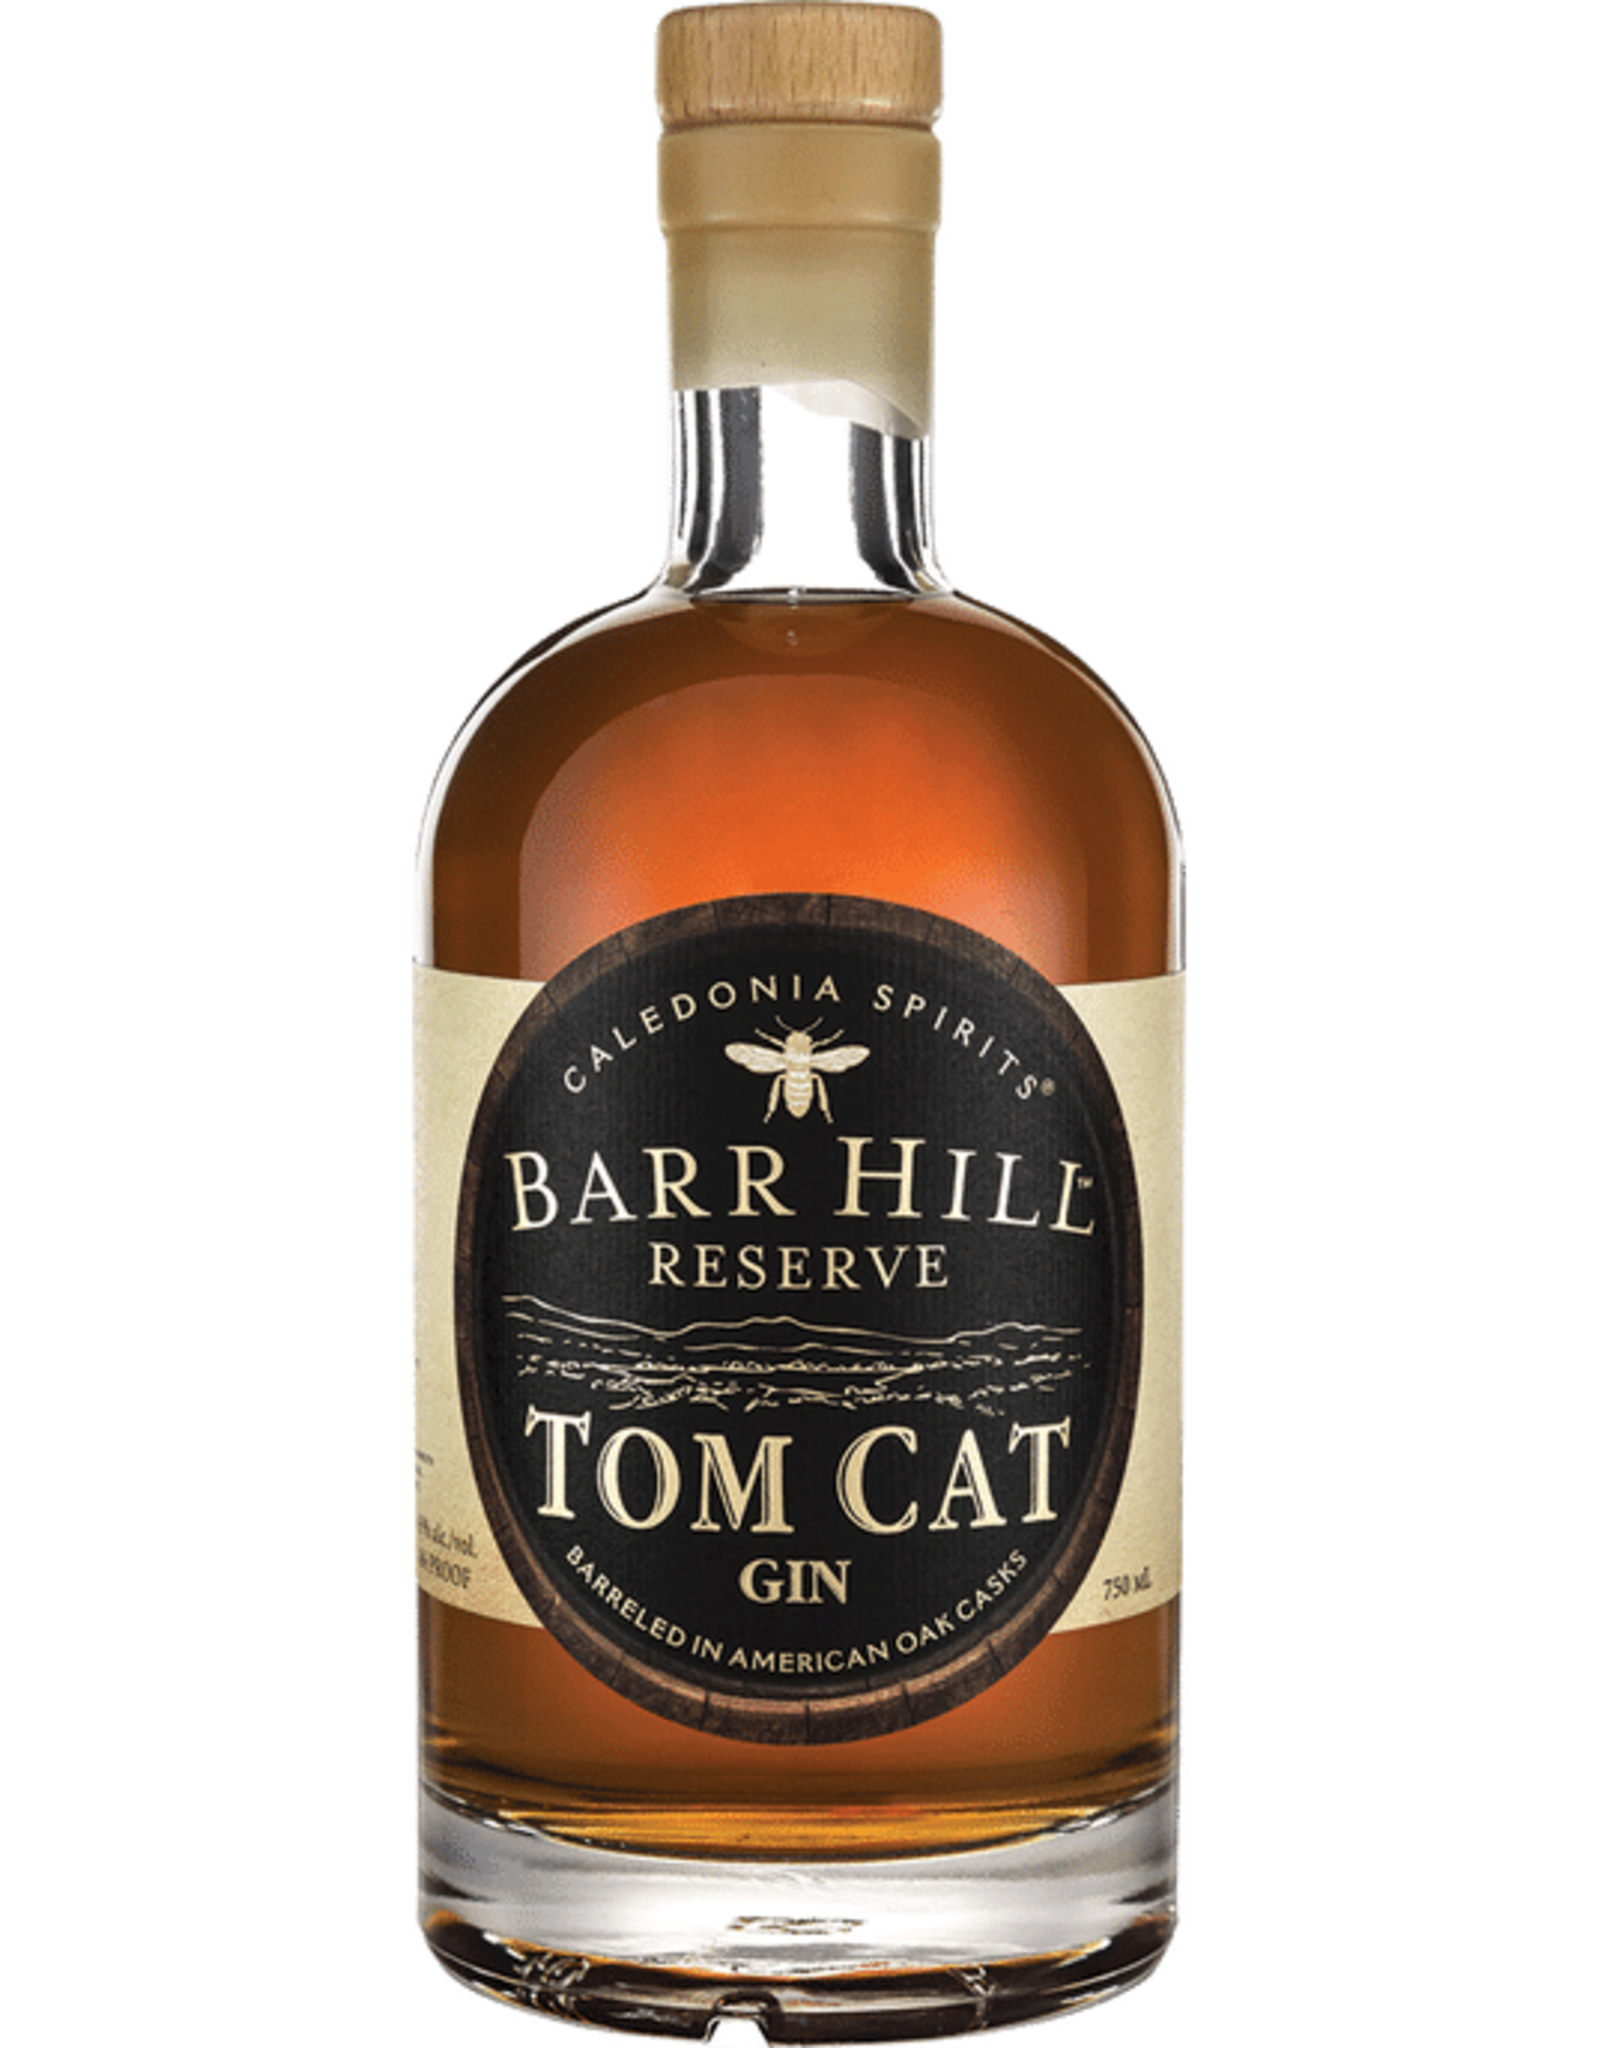 Barr Hill Reserve Gin "Tom Cat"